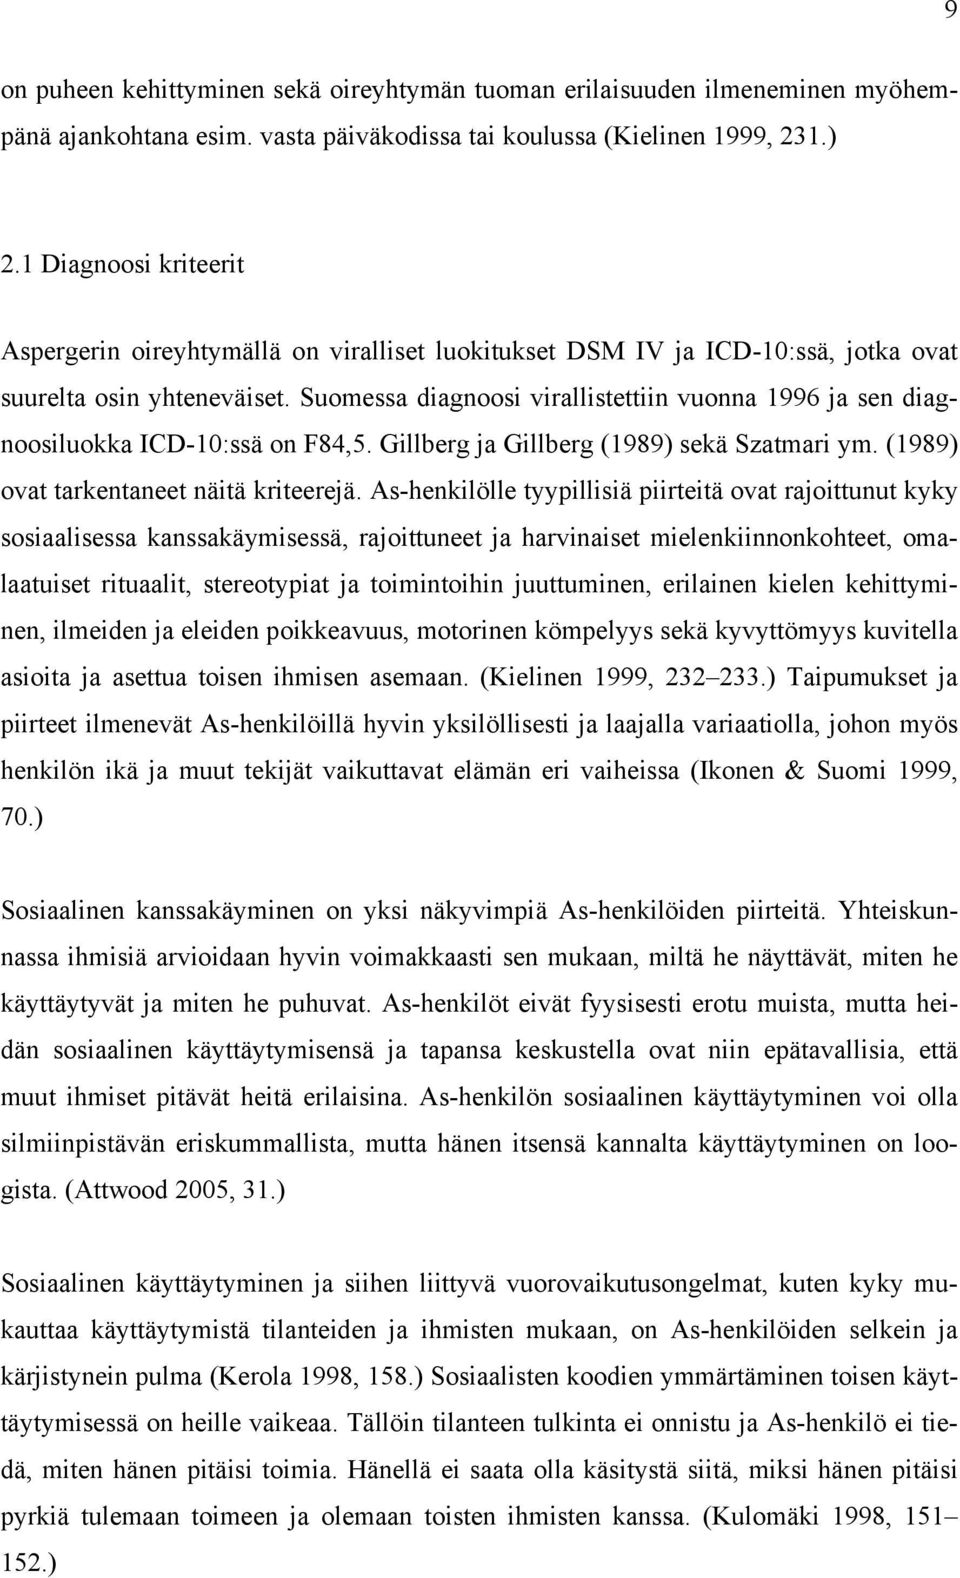 Suomessa diagnoosi virallistettiin vuonna 1996 ja sen diagnoosiluokka ICD-10:ssä on F84,5. Gillberg ja Gillberg (1989) sekä Szatmari ym. (1989) ovat tarkentaneet näitä kriteerejä.